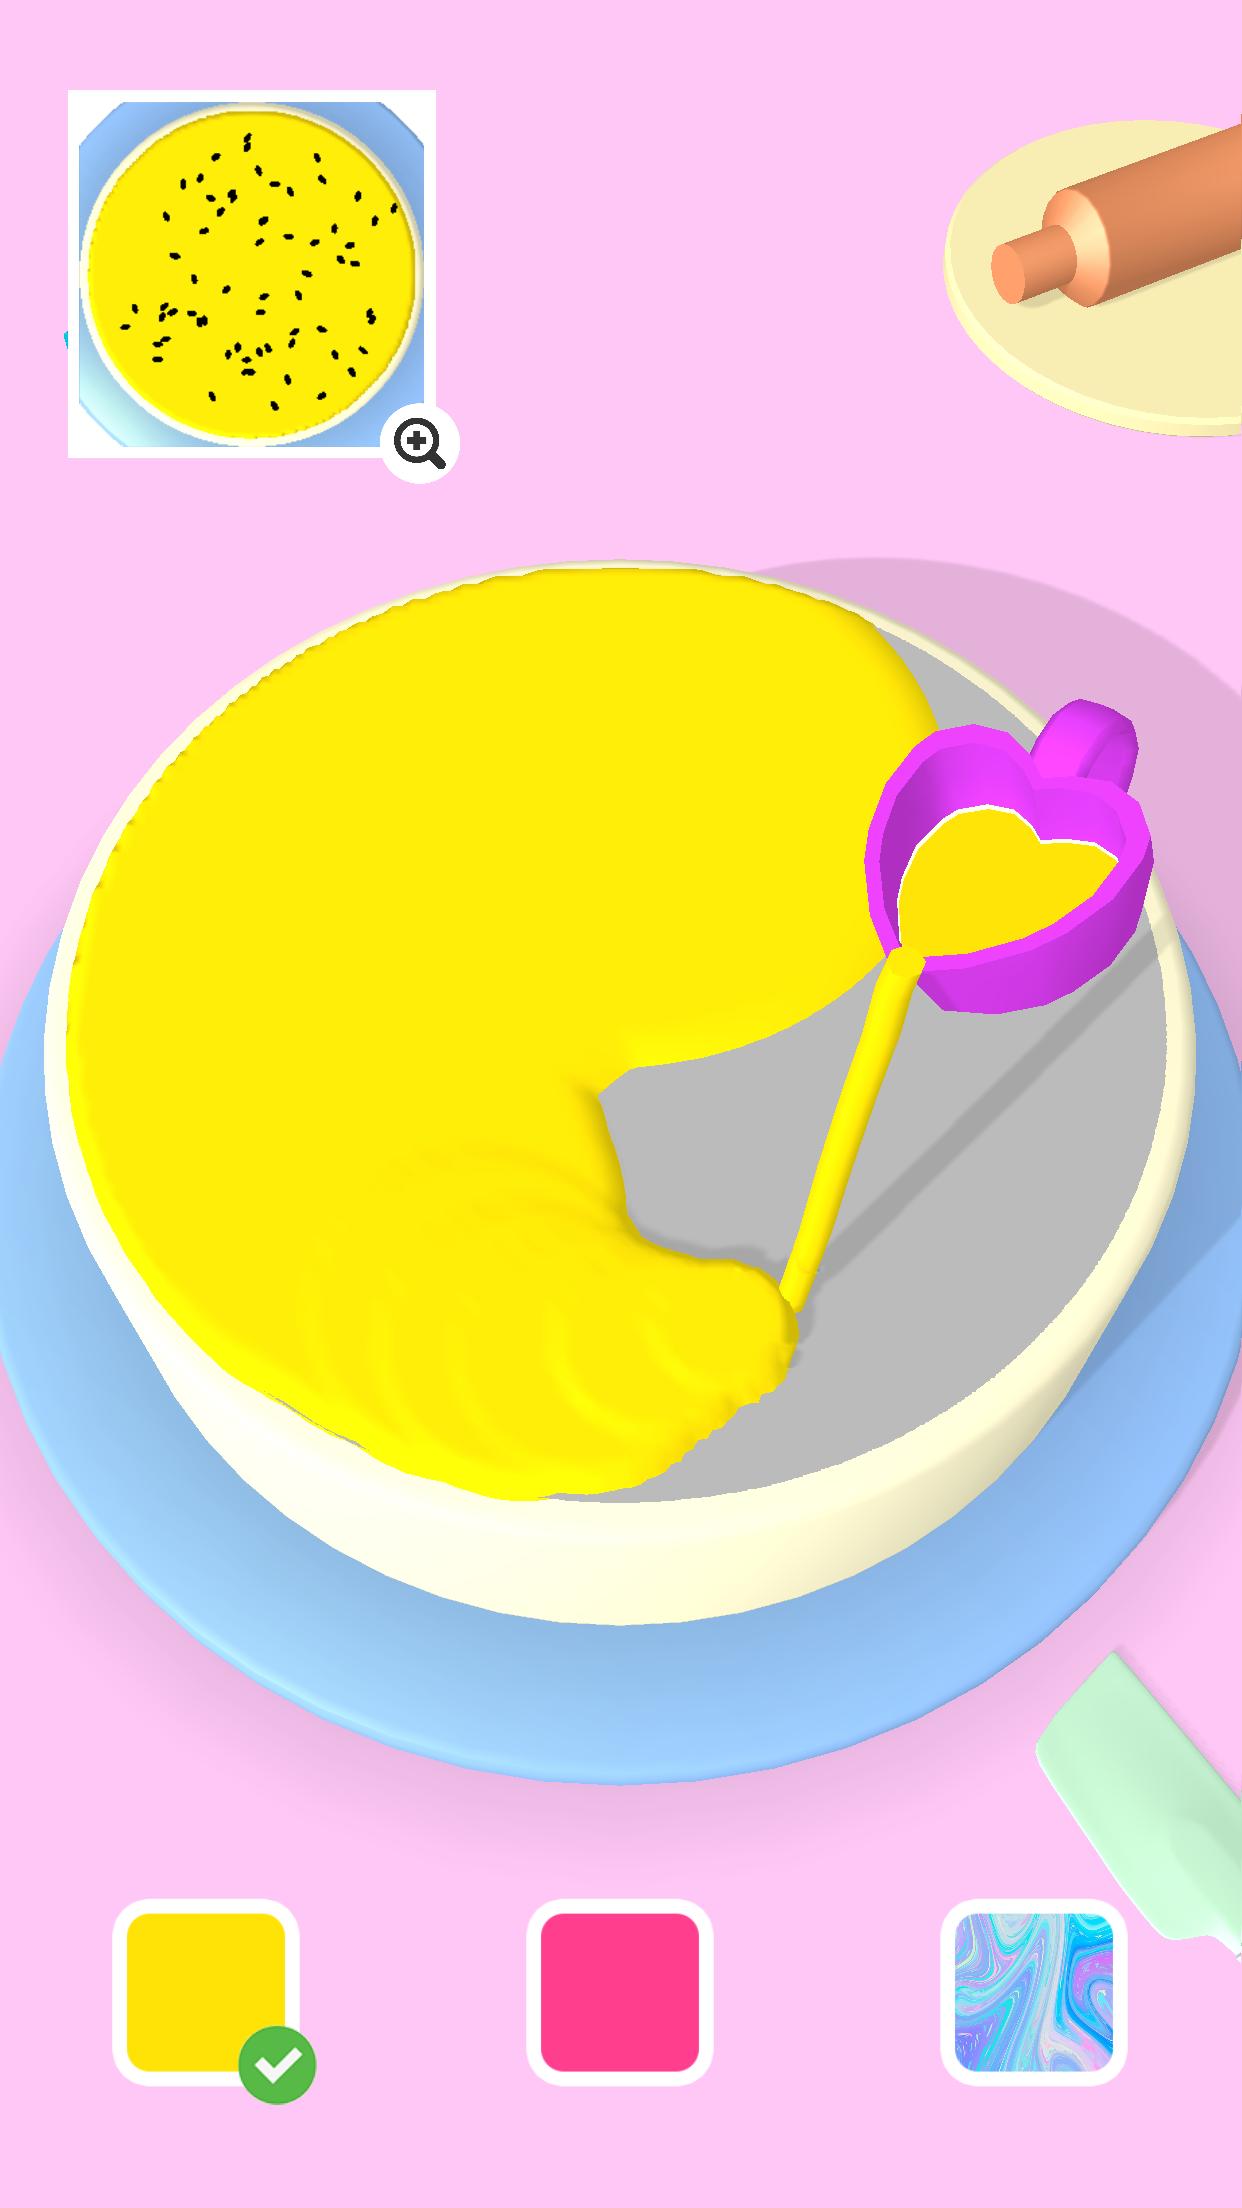 蛋糕艺术3D